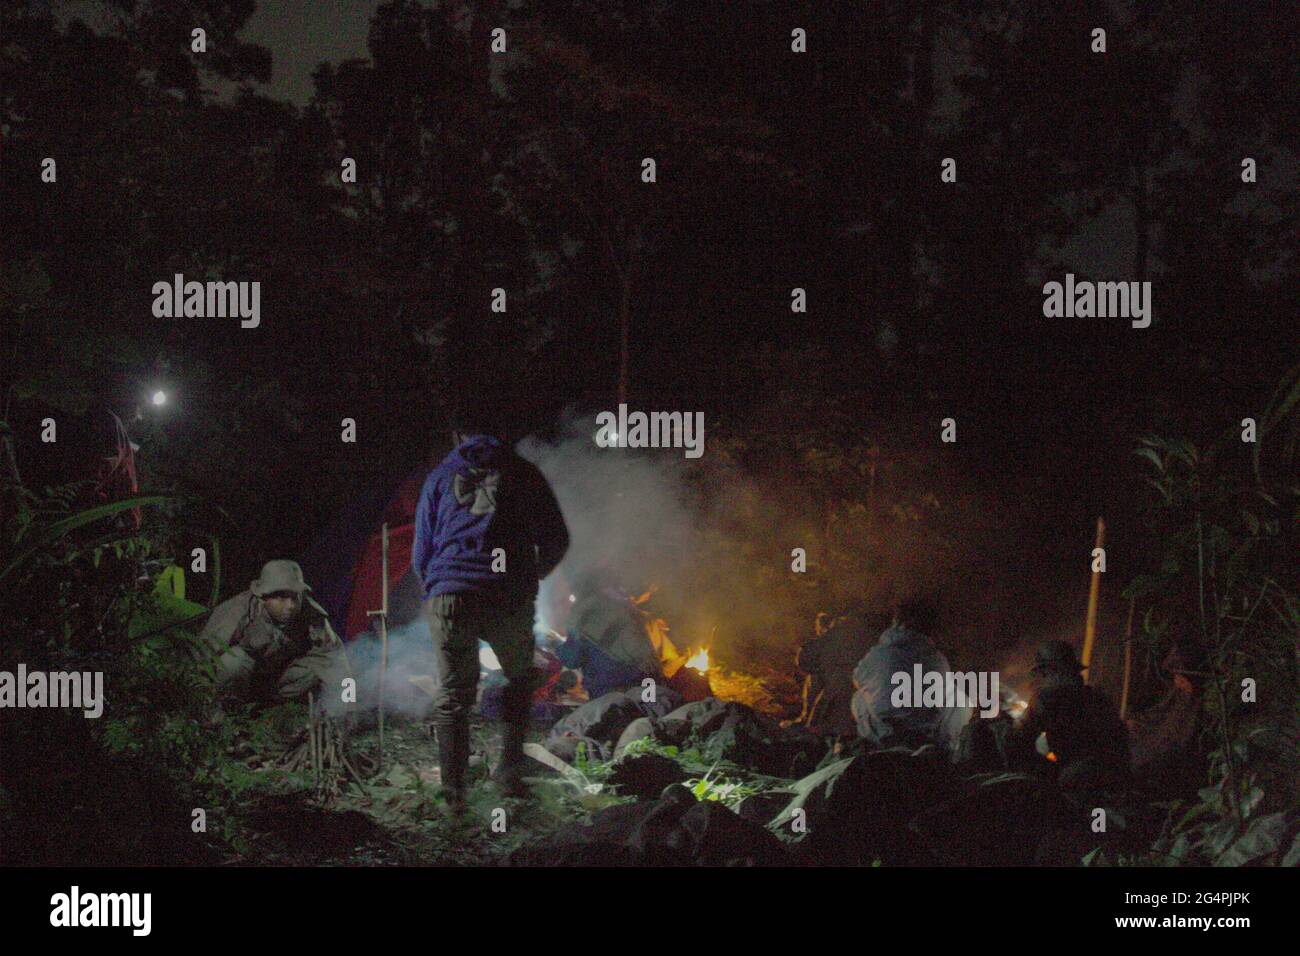 Mount Salak, West-Java, Indonesien. 11.Mai 2012. Such und rette während der Suchmission für das Sukhoi Superjet 100 (SSJ-100) Flugzeug, das am 9. Mai in der Region abgestürzt ist, kochende personen während der Ruhephase. Stockfoto